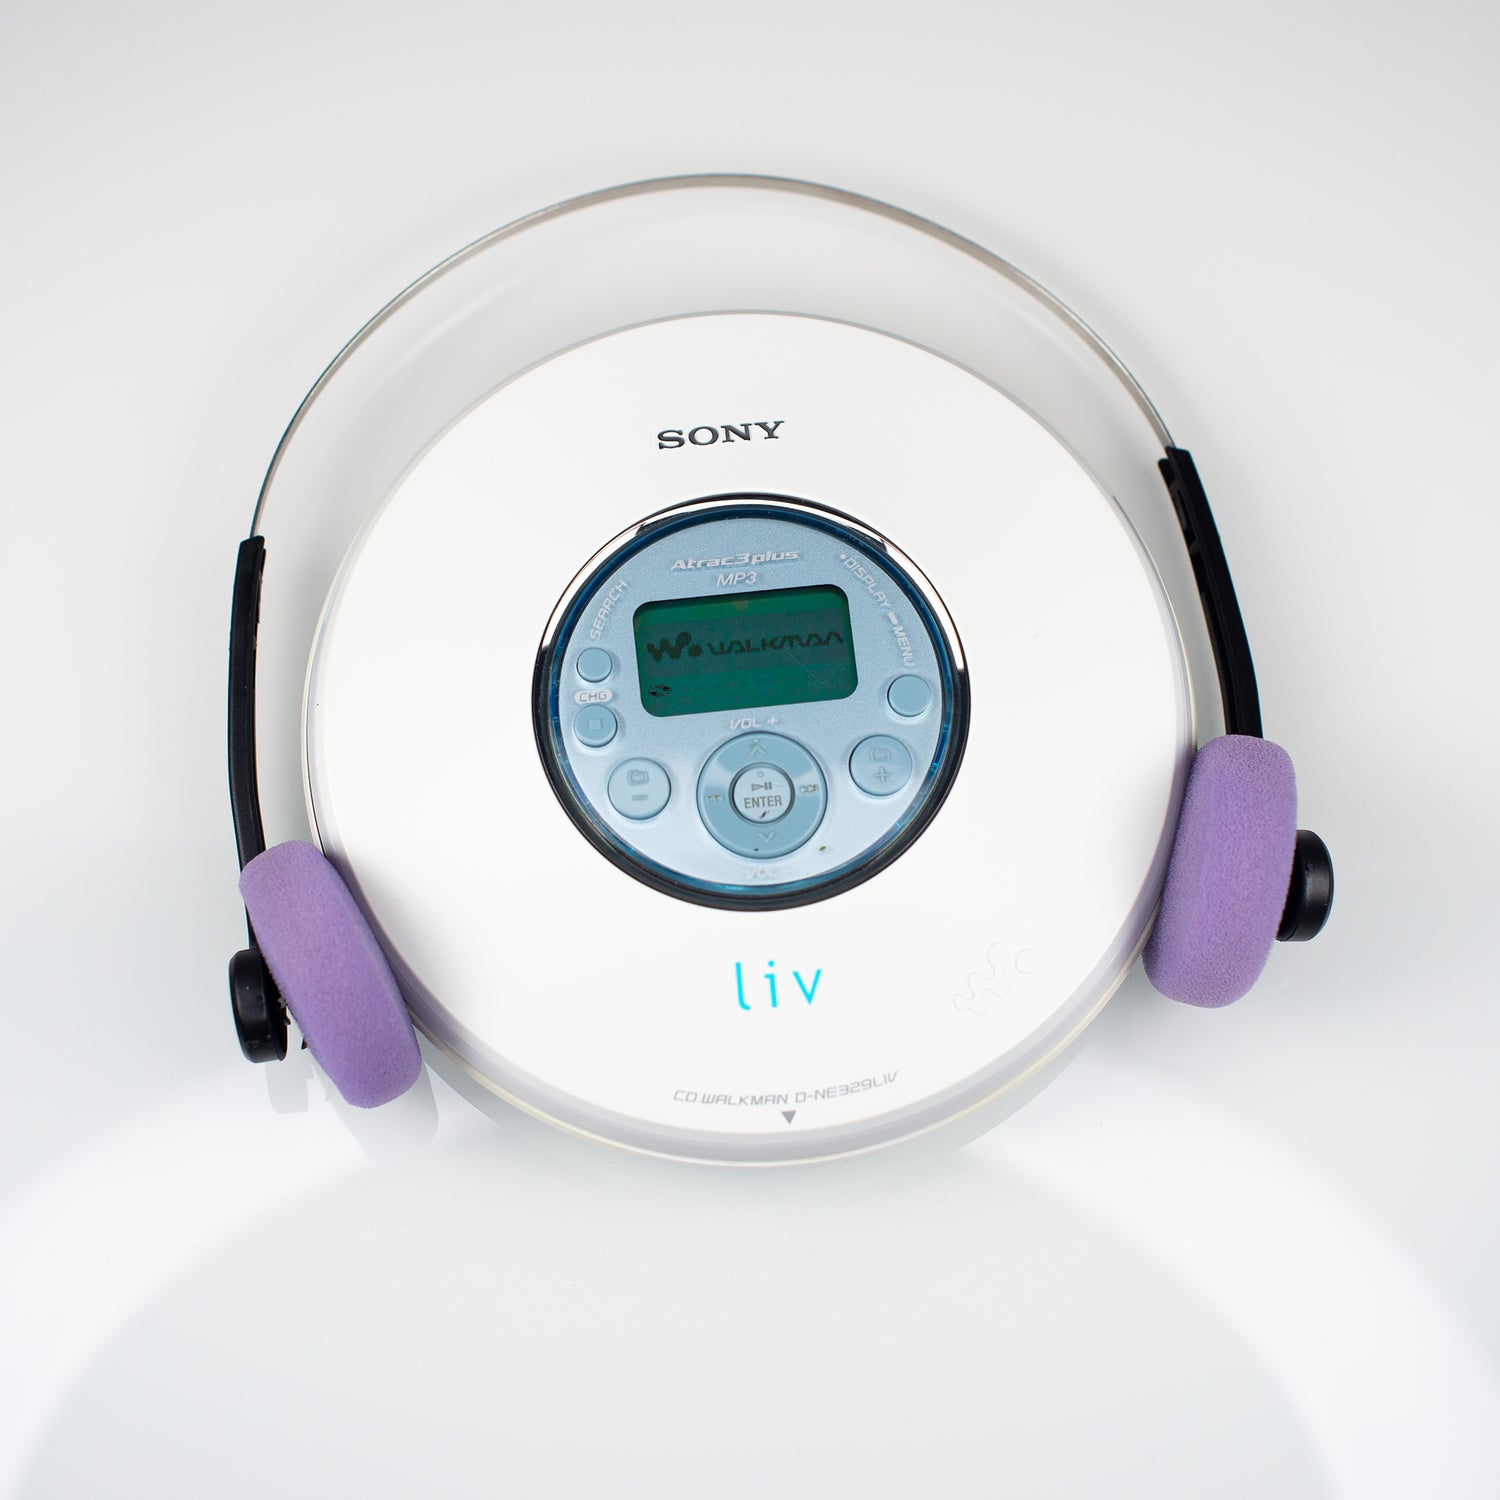 Sony D-NE320 PSYC MP3/ATRAC CD Walkman - Rosa